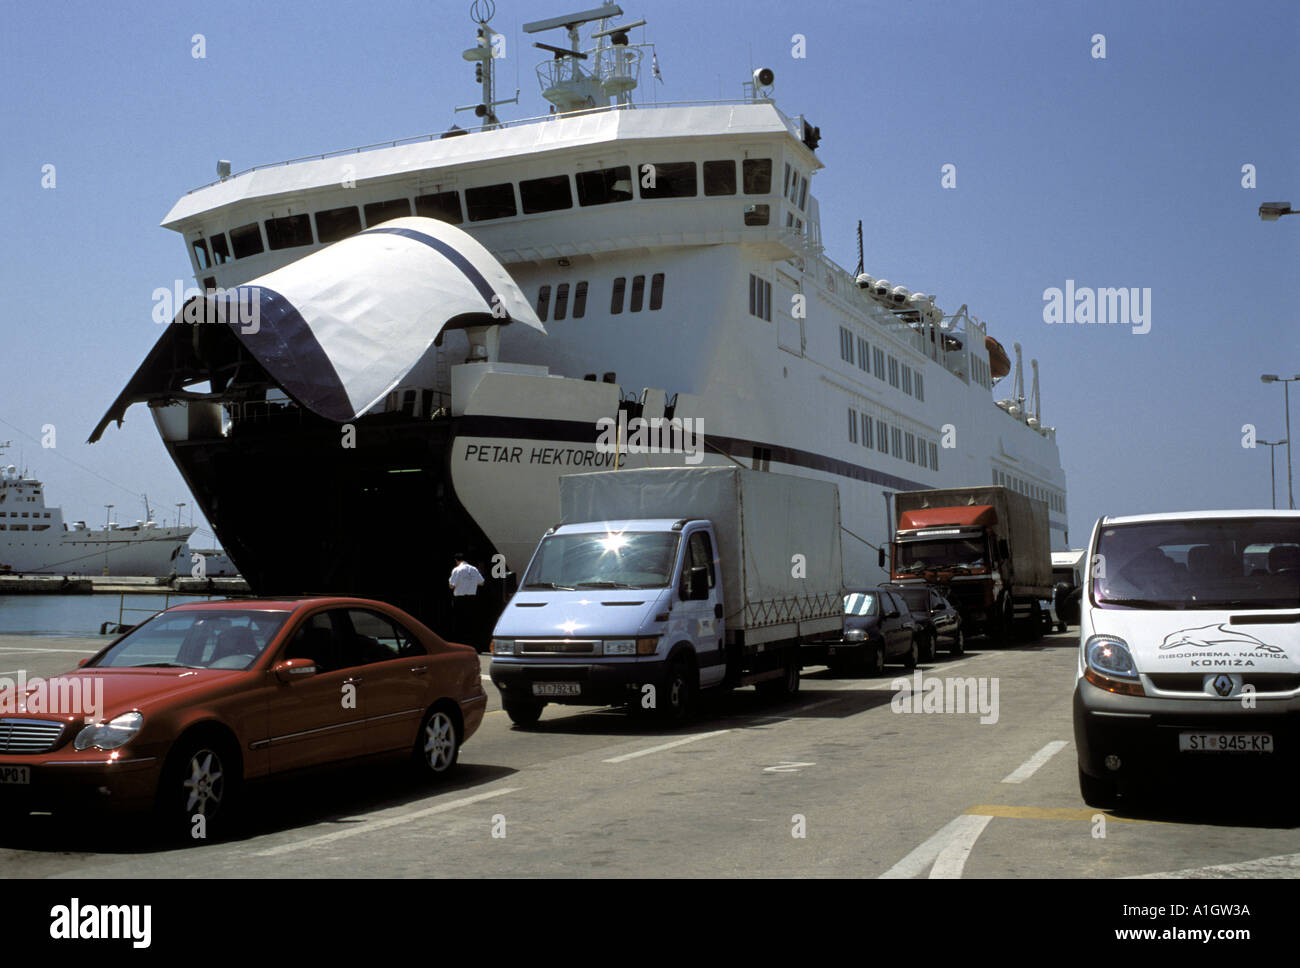 Voitures et fourgons de queue de conseil Car-ferry Jadrolinija amarré au port de Split Croatie Dalmatie Makarska Mer Adriatique peuvent Banque D'Images